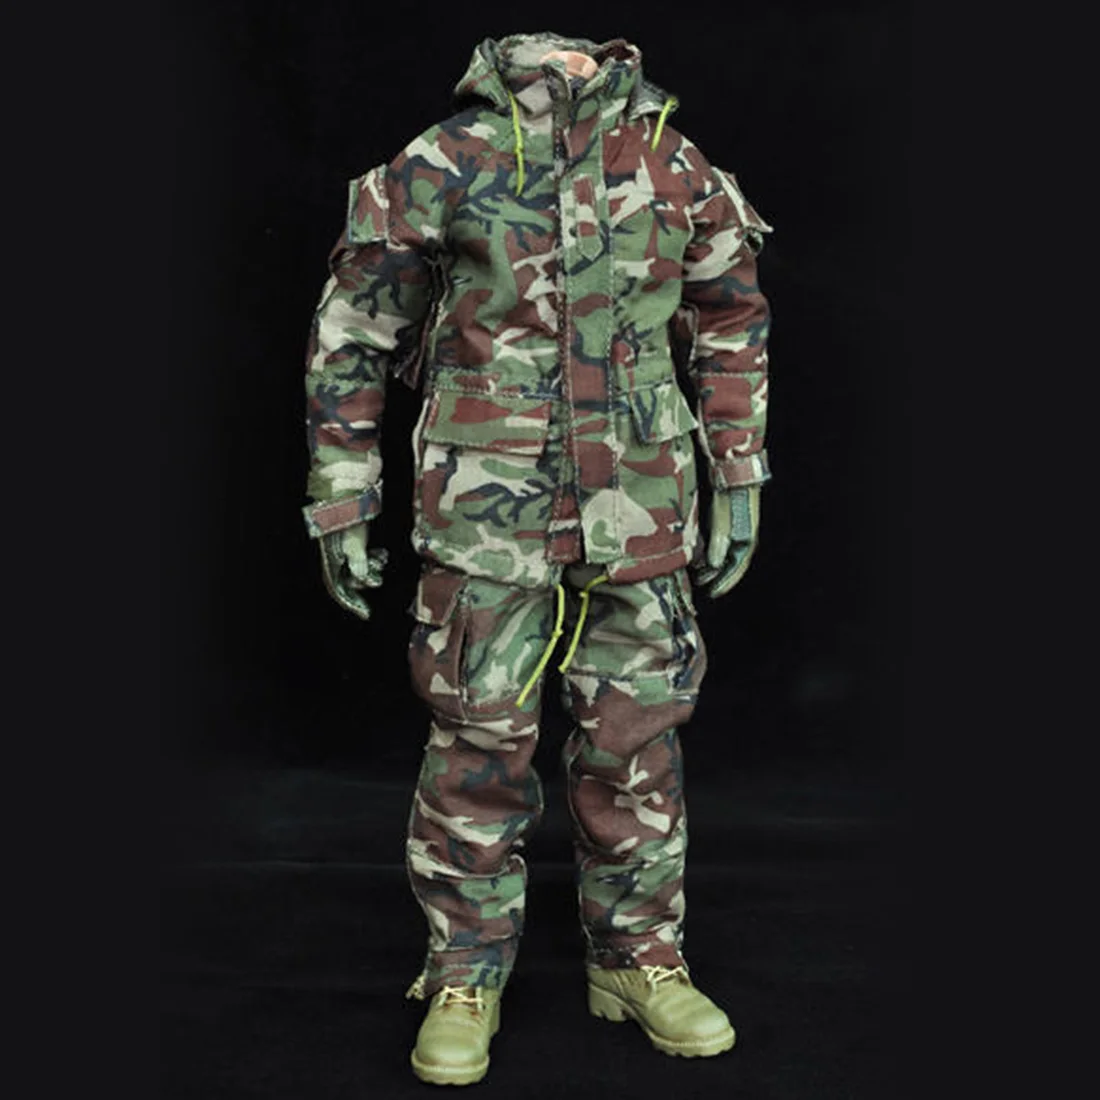 VeryHot 1/6 1" модель солдата Костюм Современная война США войскам Ираку война джунгли снайперская одежда модель солдата(голова тела не входит в комплект